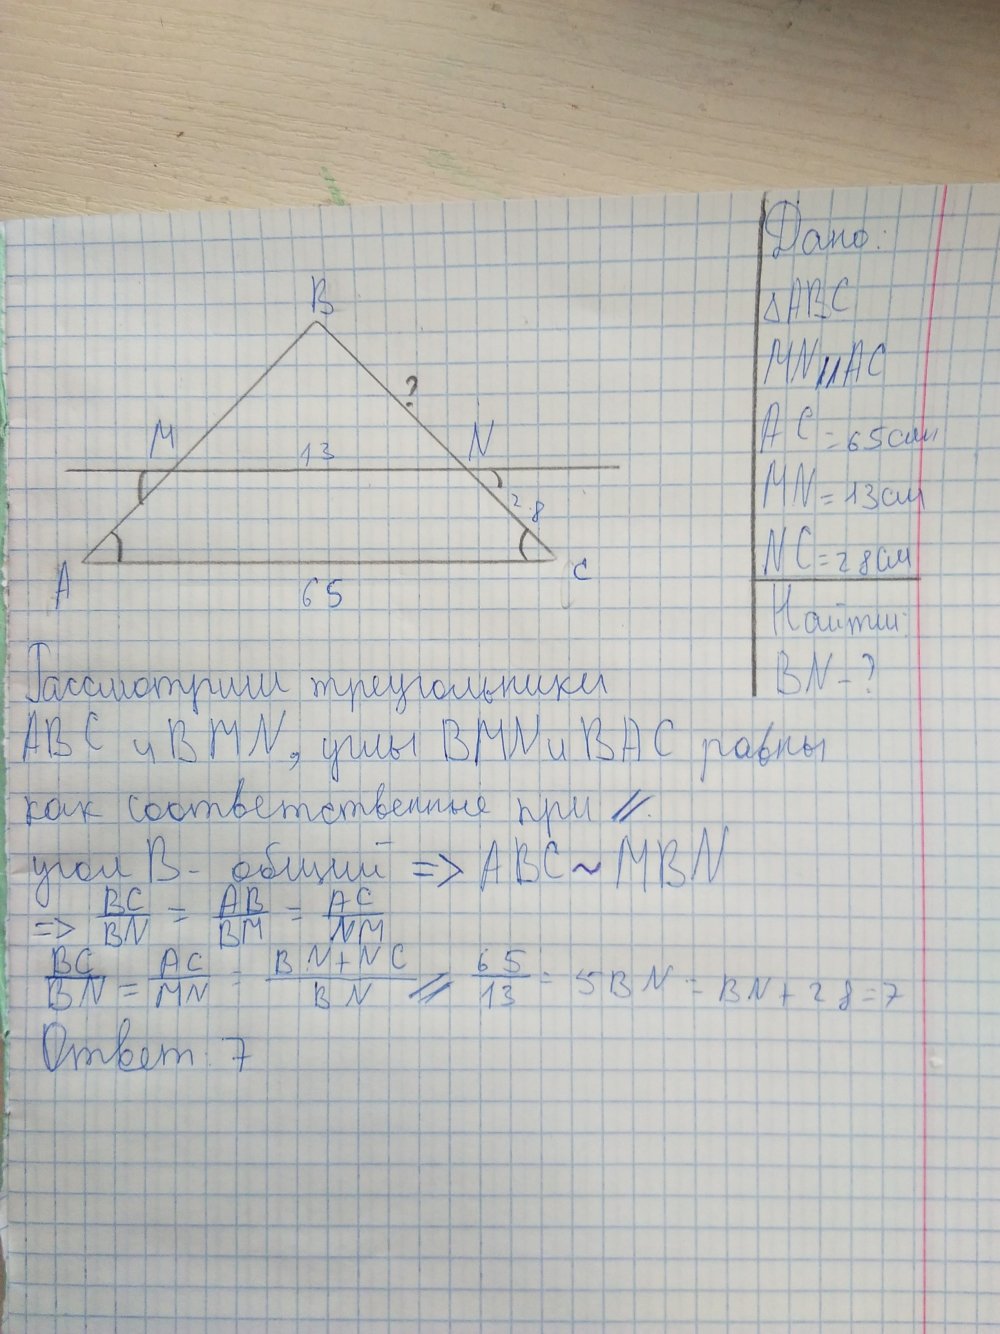 Прямая параллельная стороне АС треугольника